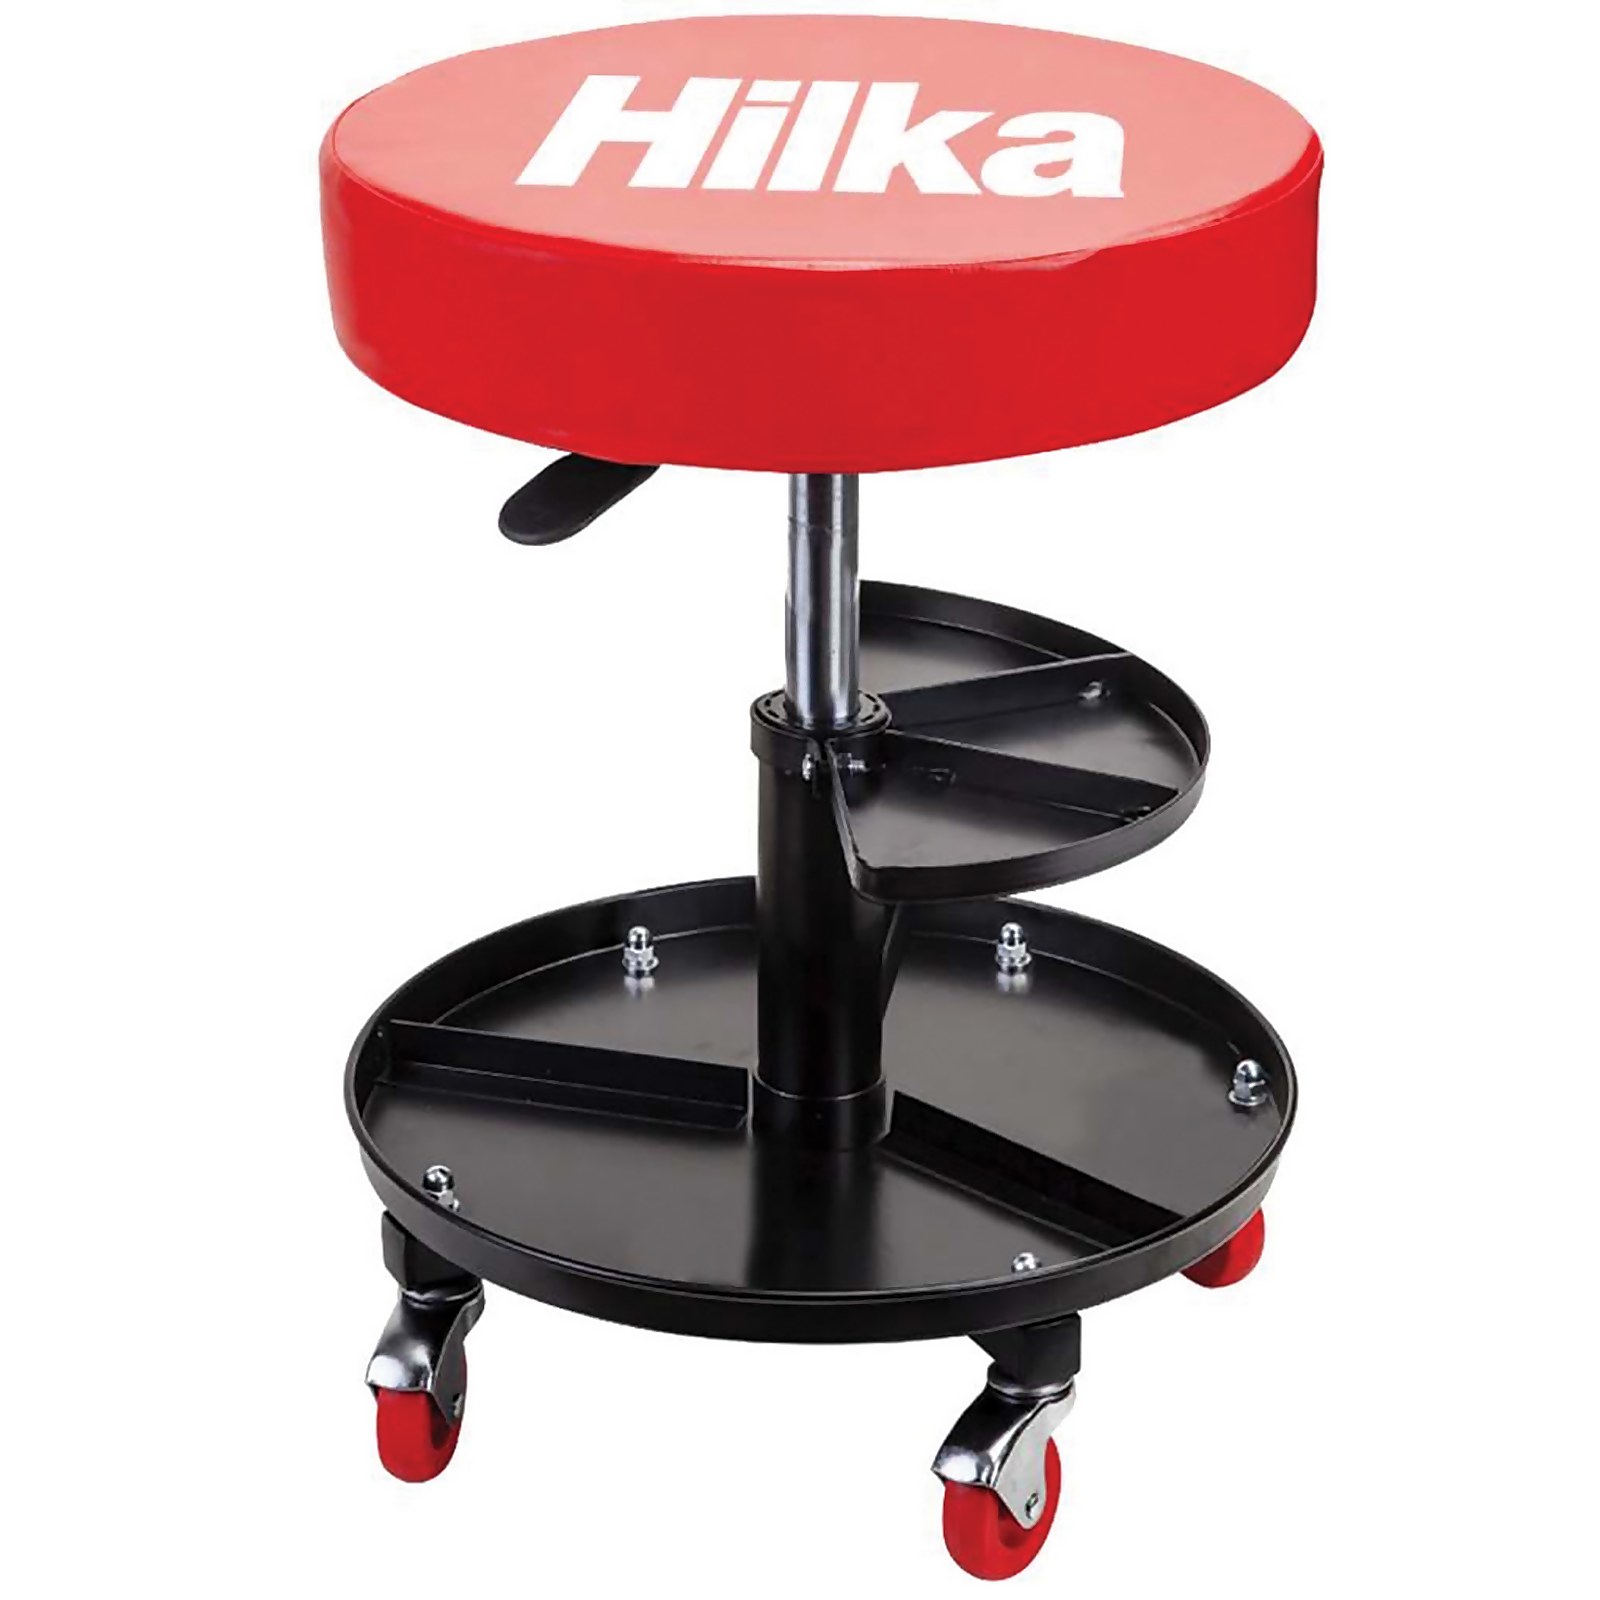 Photo of Hilka Mechanics Seat With Storage